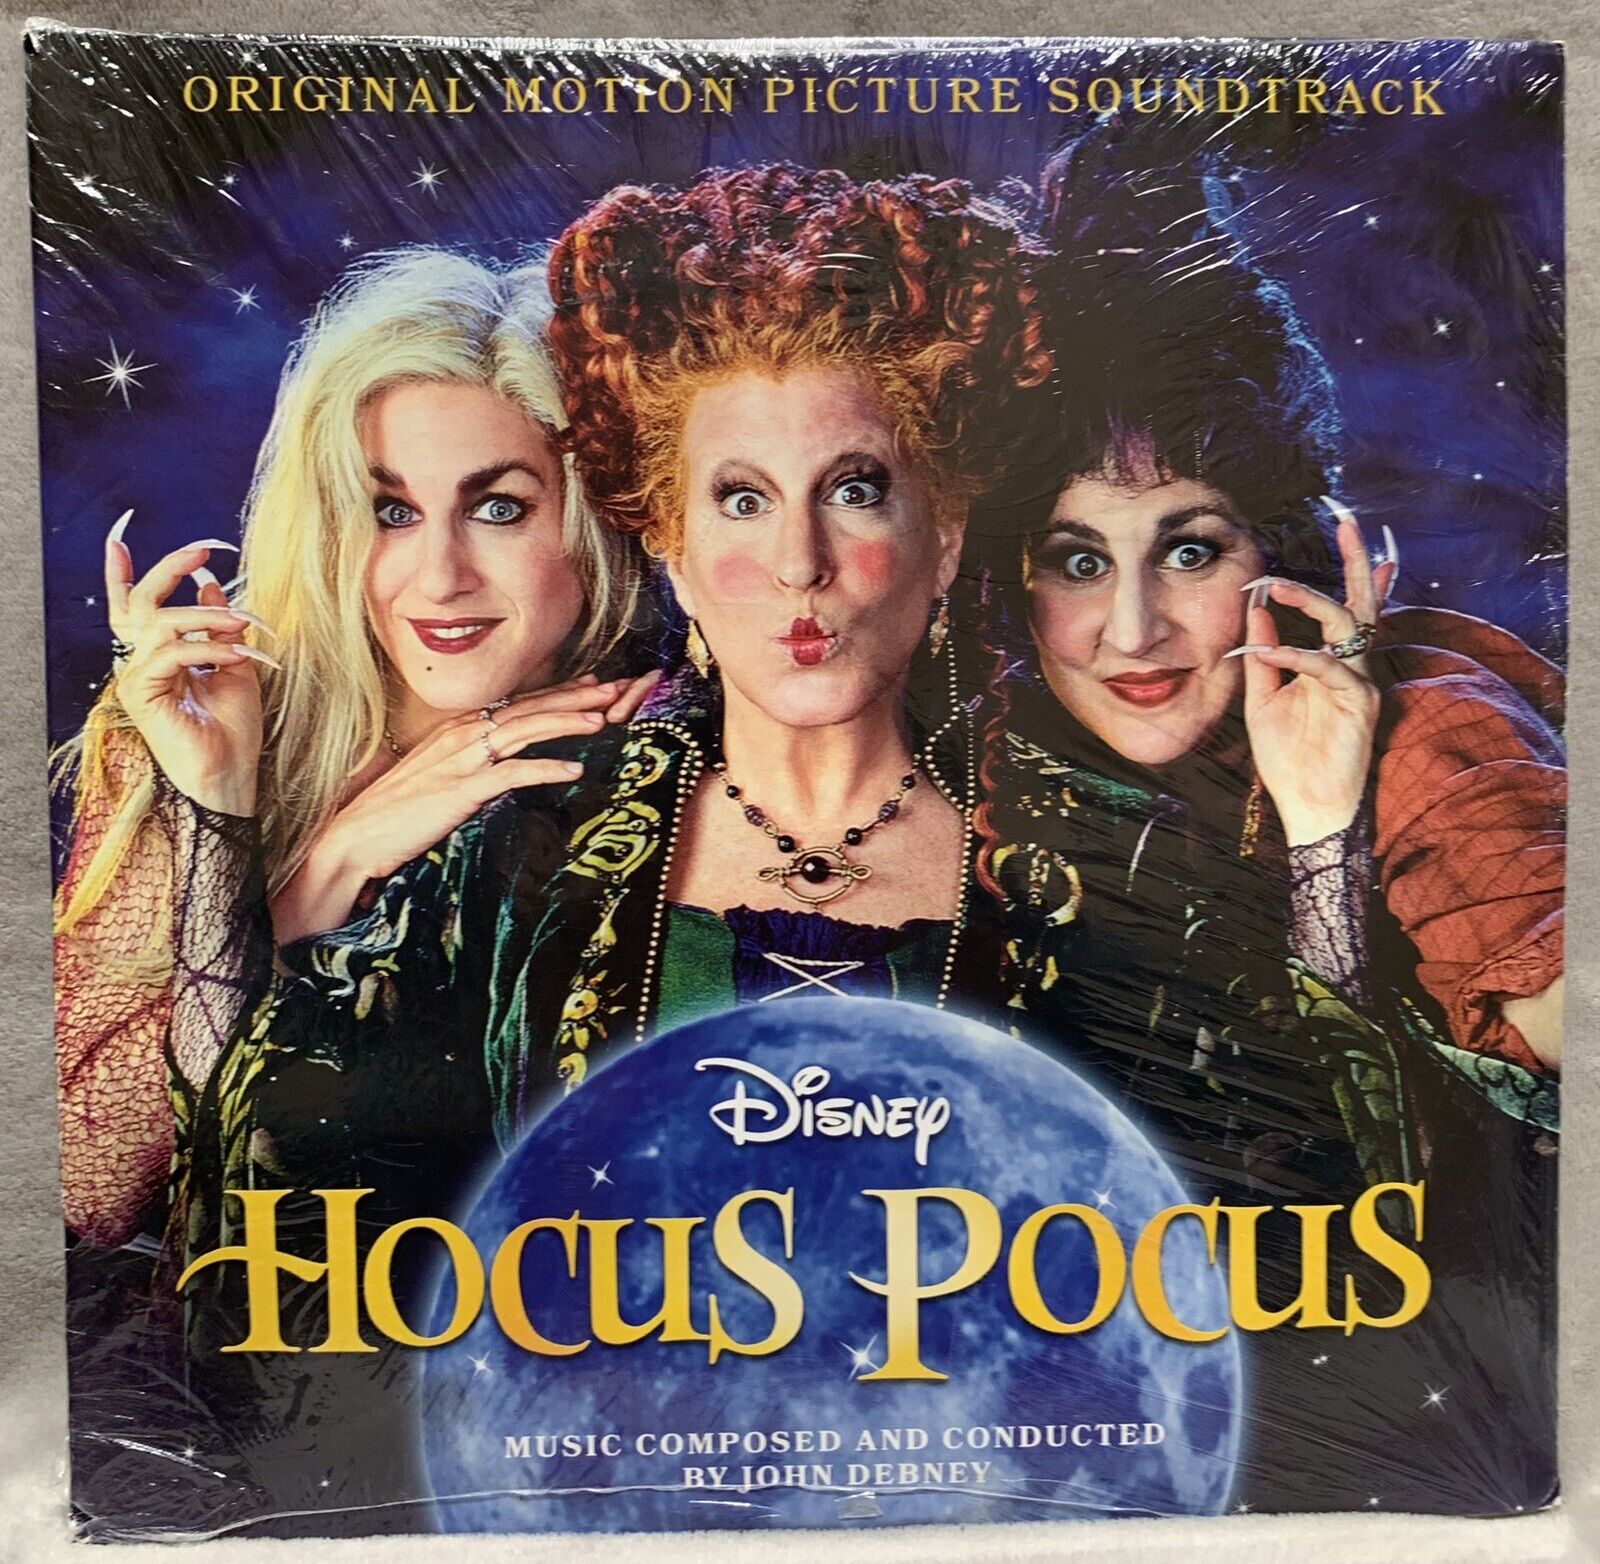 NEW Disney HOCUS POCUS Original Motion Picture Soundtrack Double LP Vinyl Set